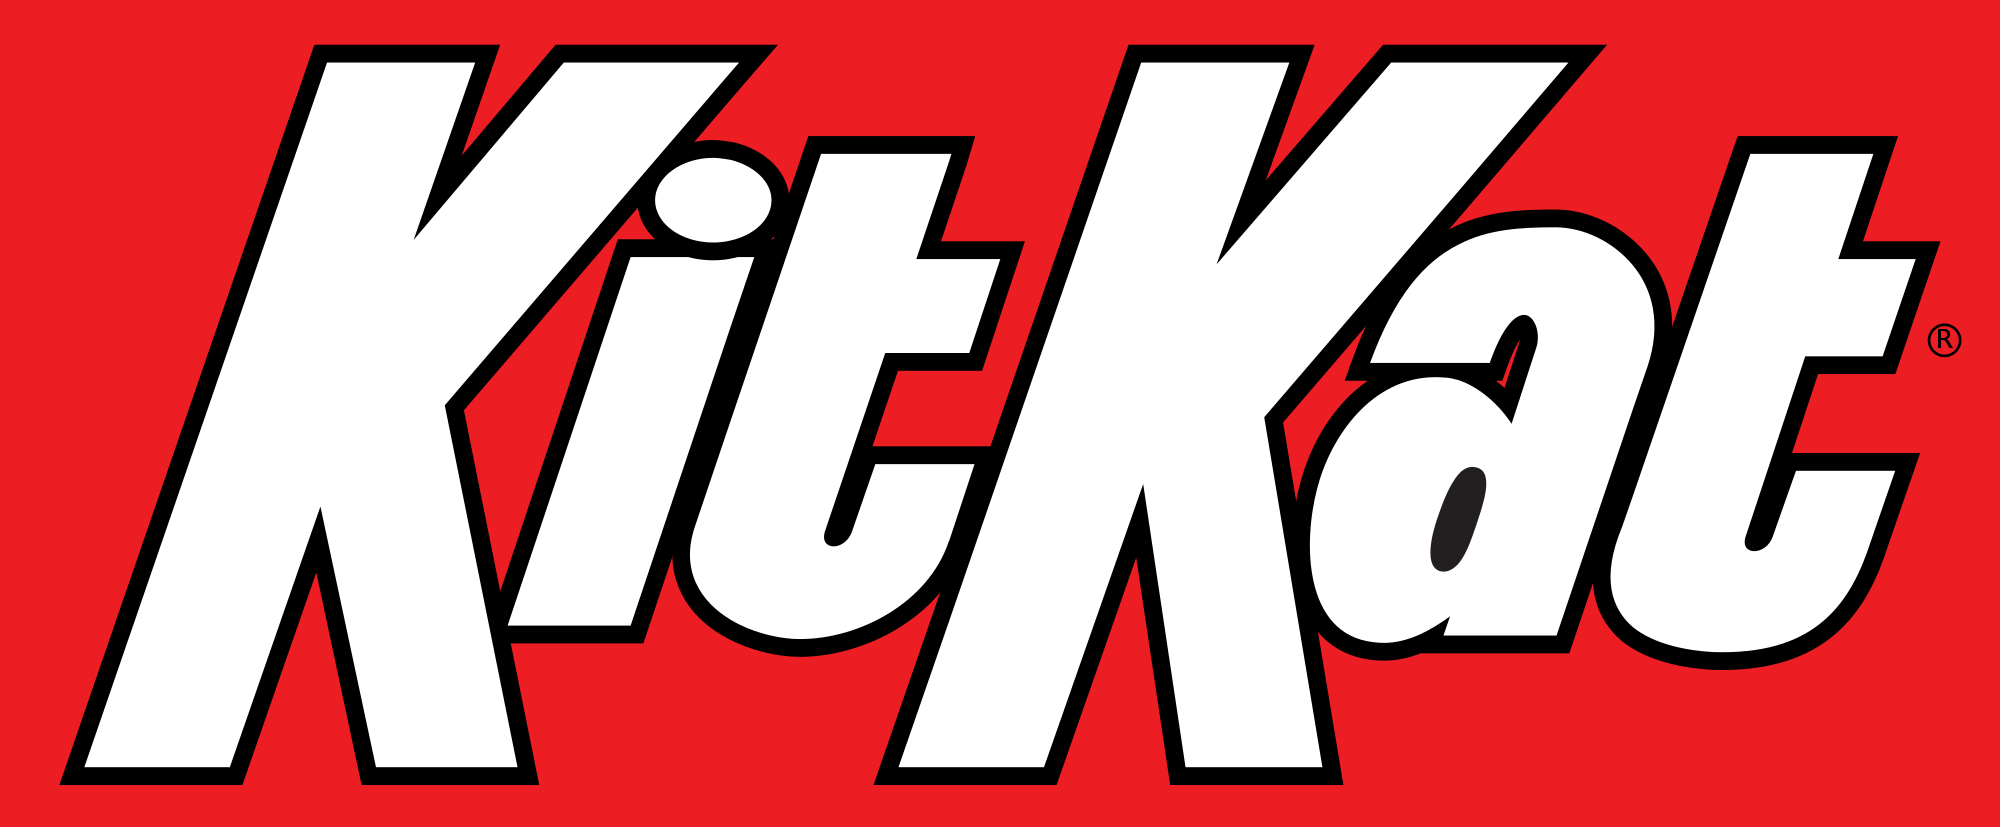 Kit Kat Logo - KitKat US logo.svg